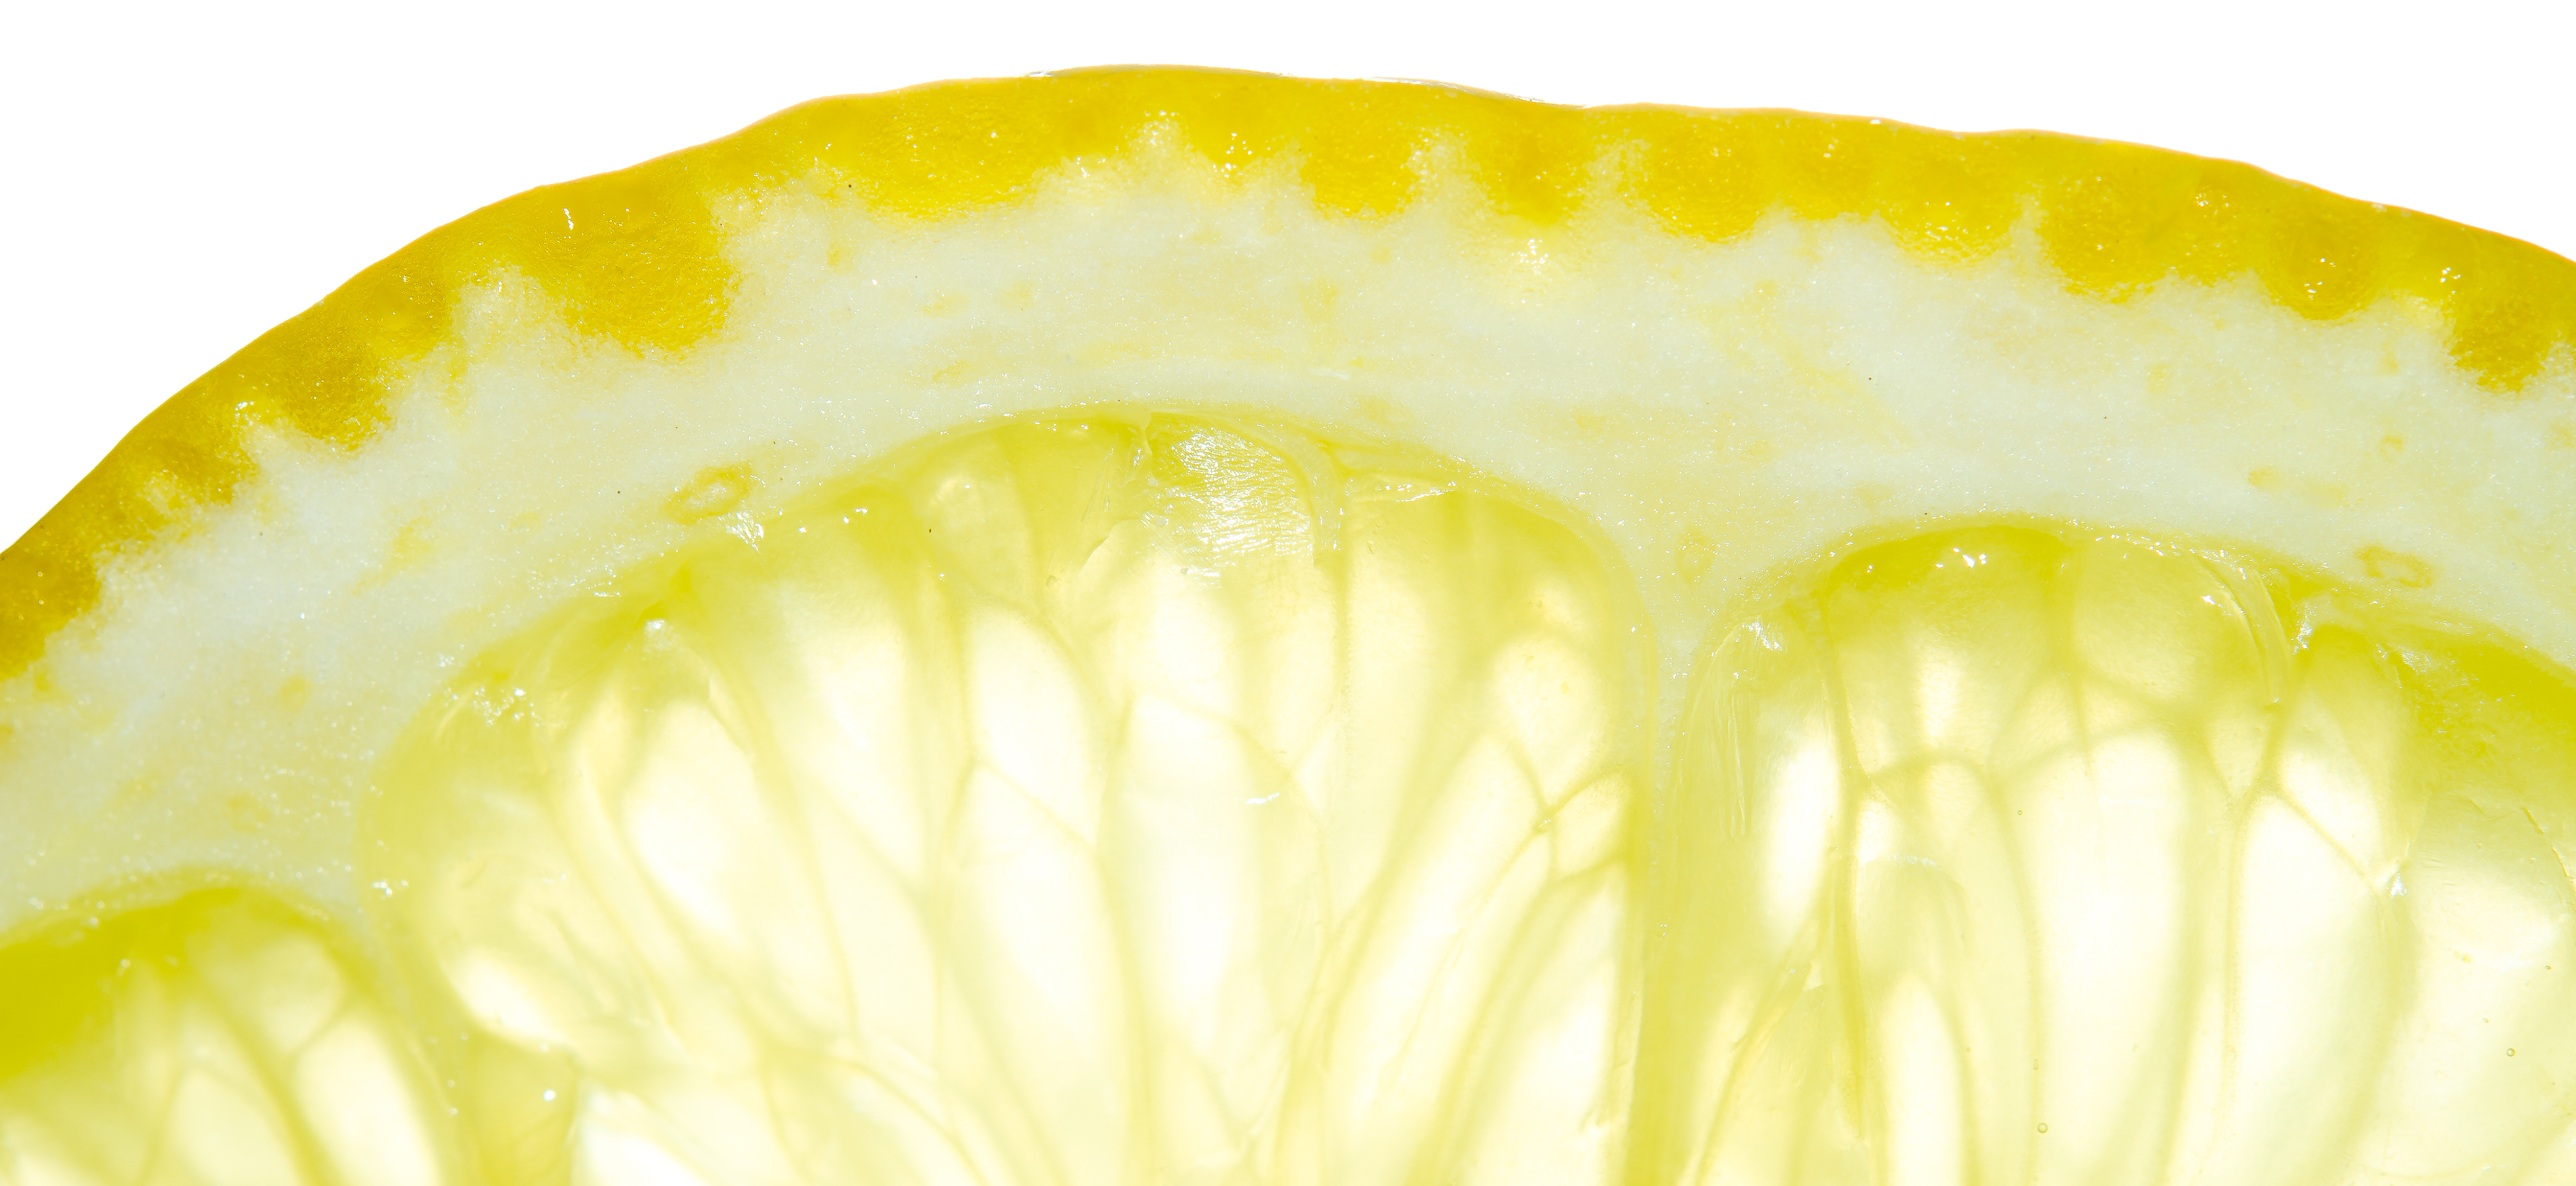 File:Lemon macro detail fruit.jpg - Wikimedia Commons